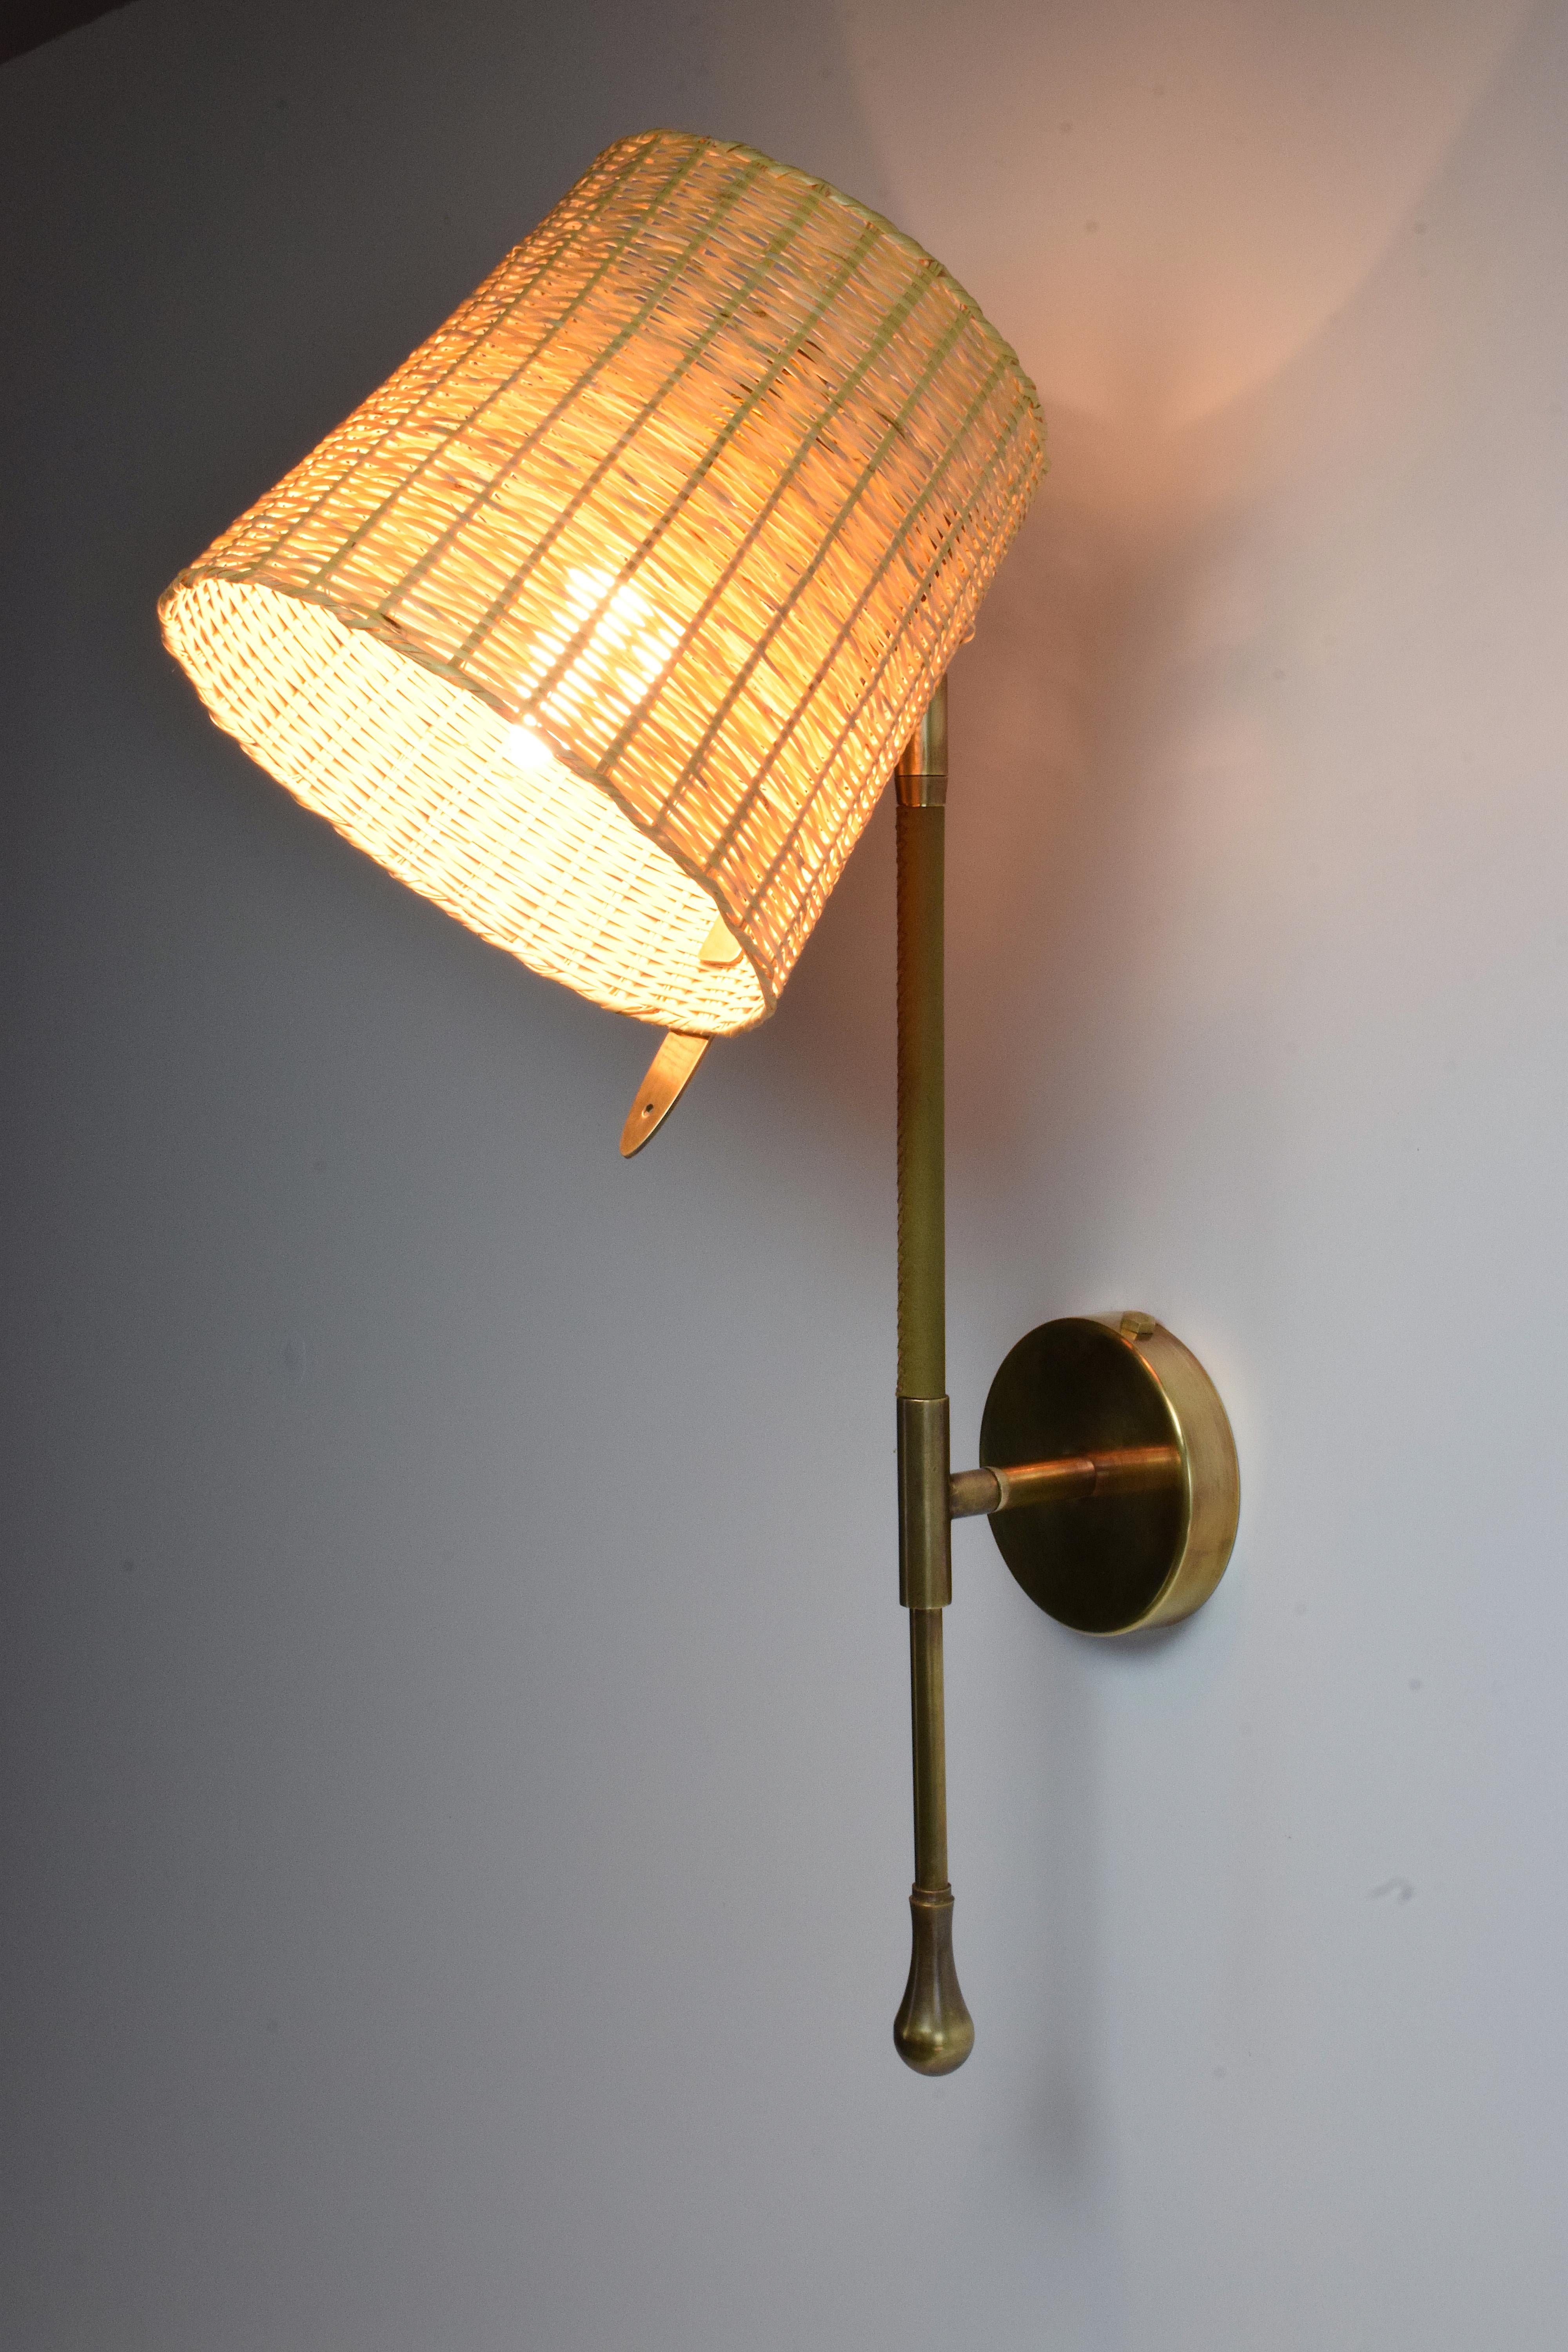 Zeitgenössische, handgefertigte Wandleuchte oder Wandleuchter, bestehend aus einer goldpolierten Messingstruktur mit einem  Der Schirm aus handgeflochtenem Weidengeflecht ist um 90° drehbar und verfügt über einen Stiel, mit dem Sie die Leuchte